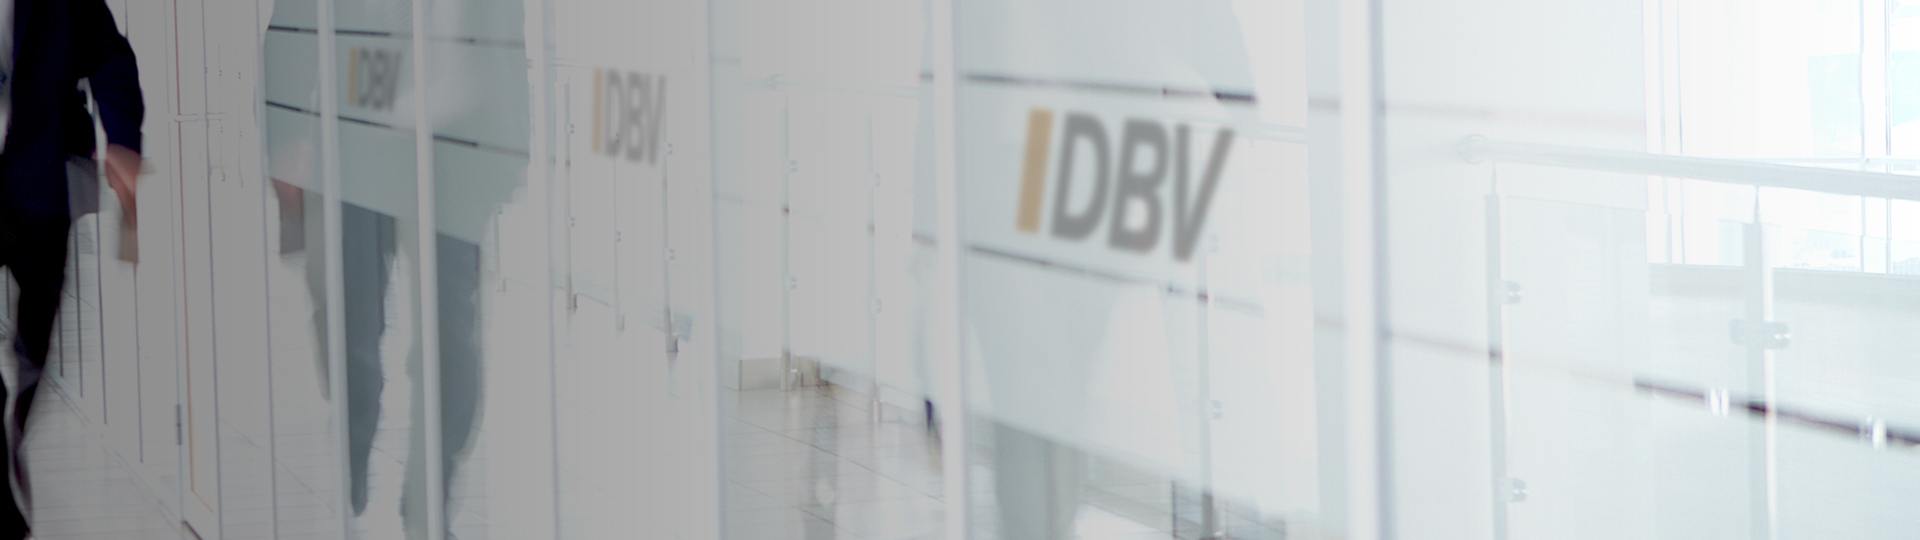 Wichtige Versicherungen | DBV Bonn Dietmar Kaiser